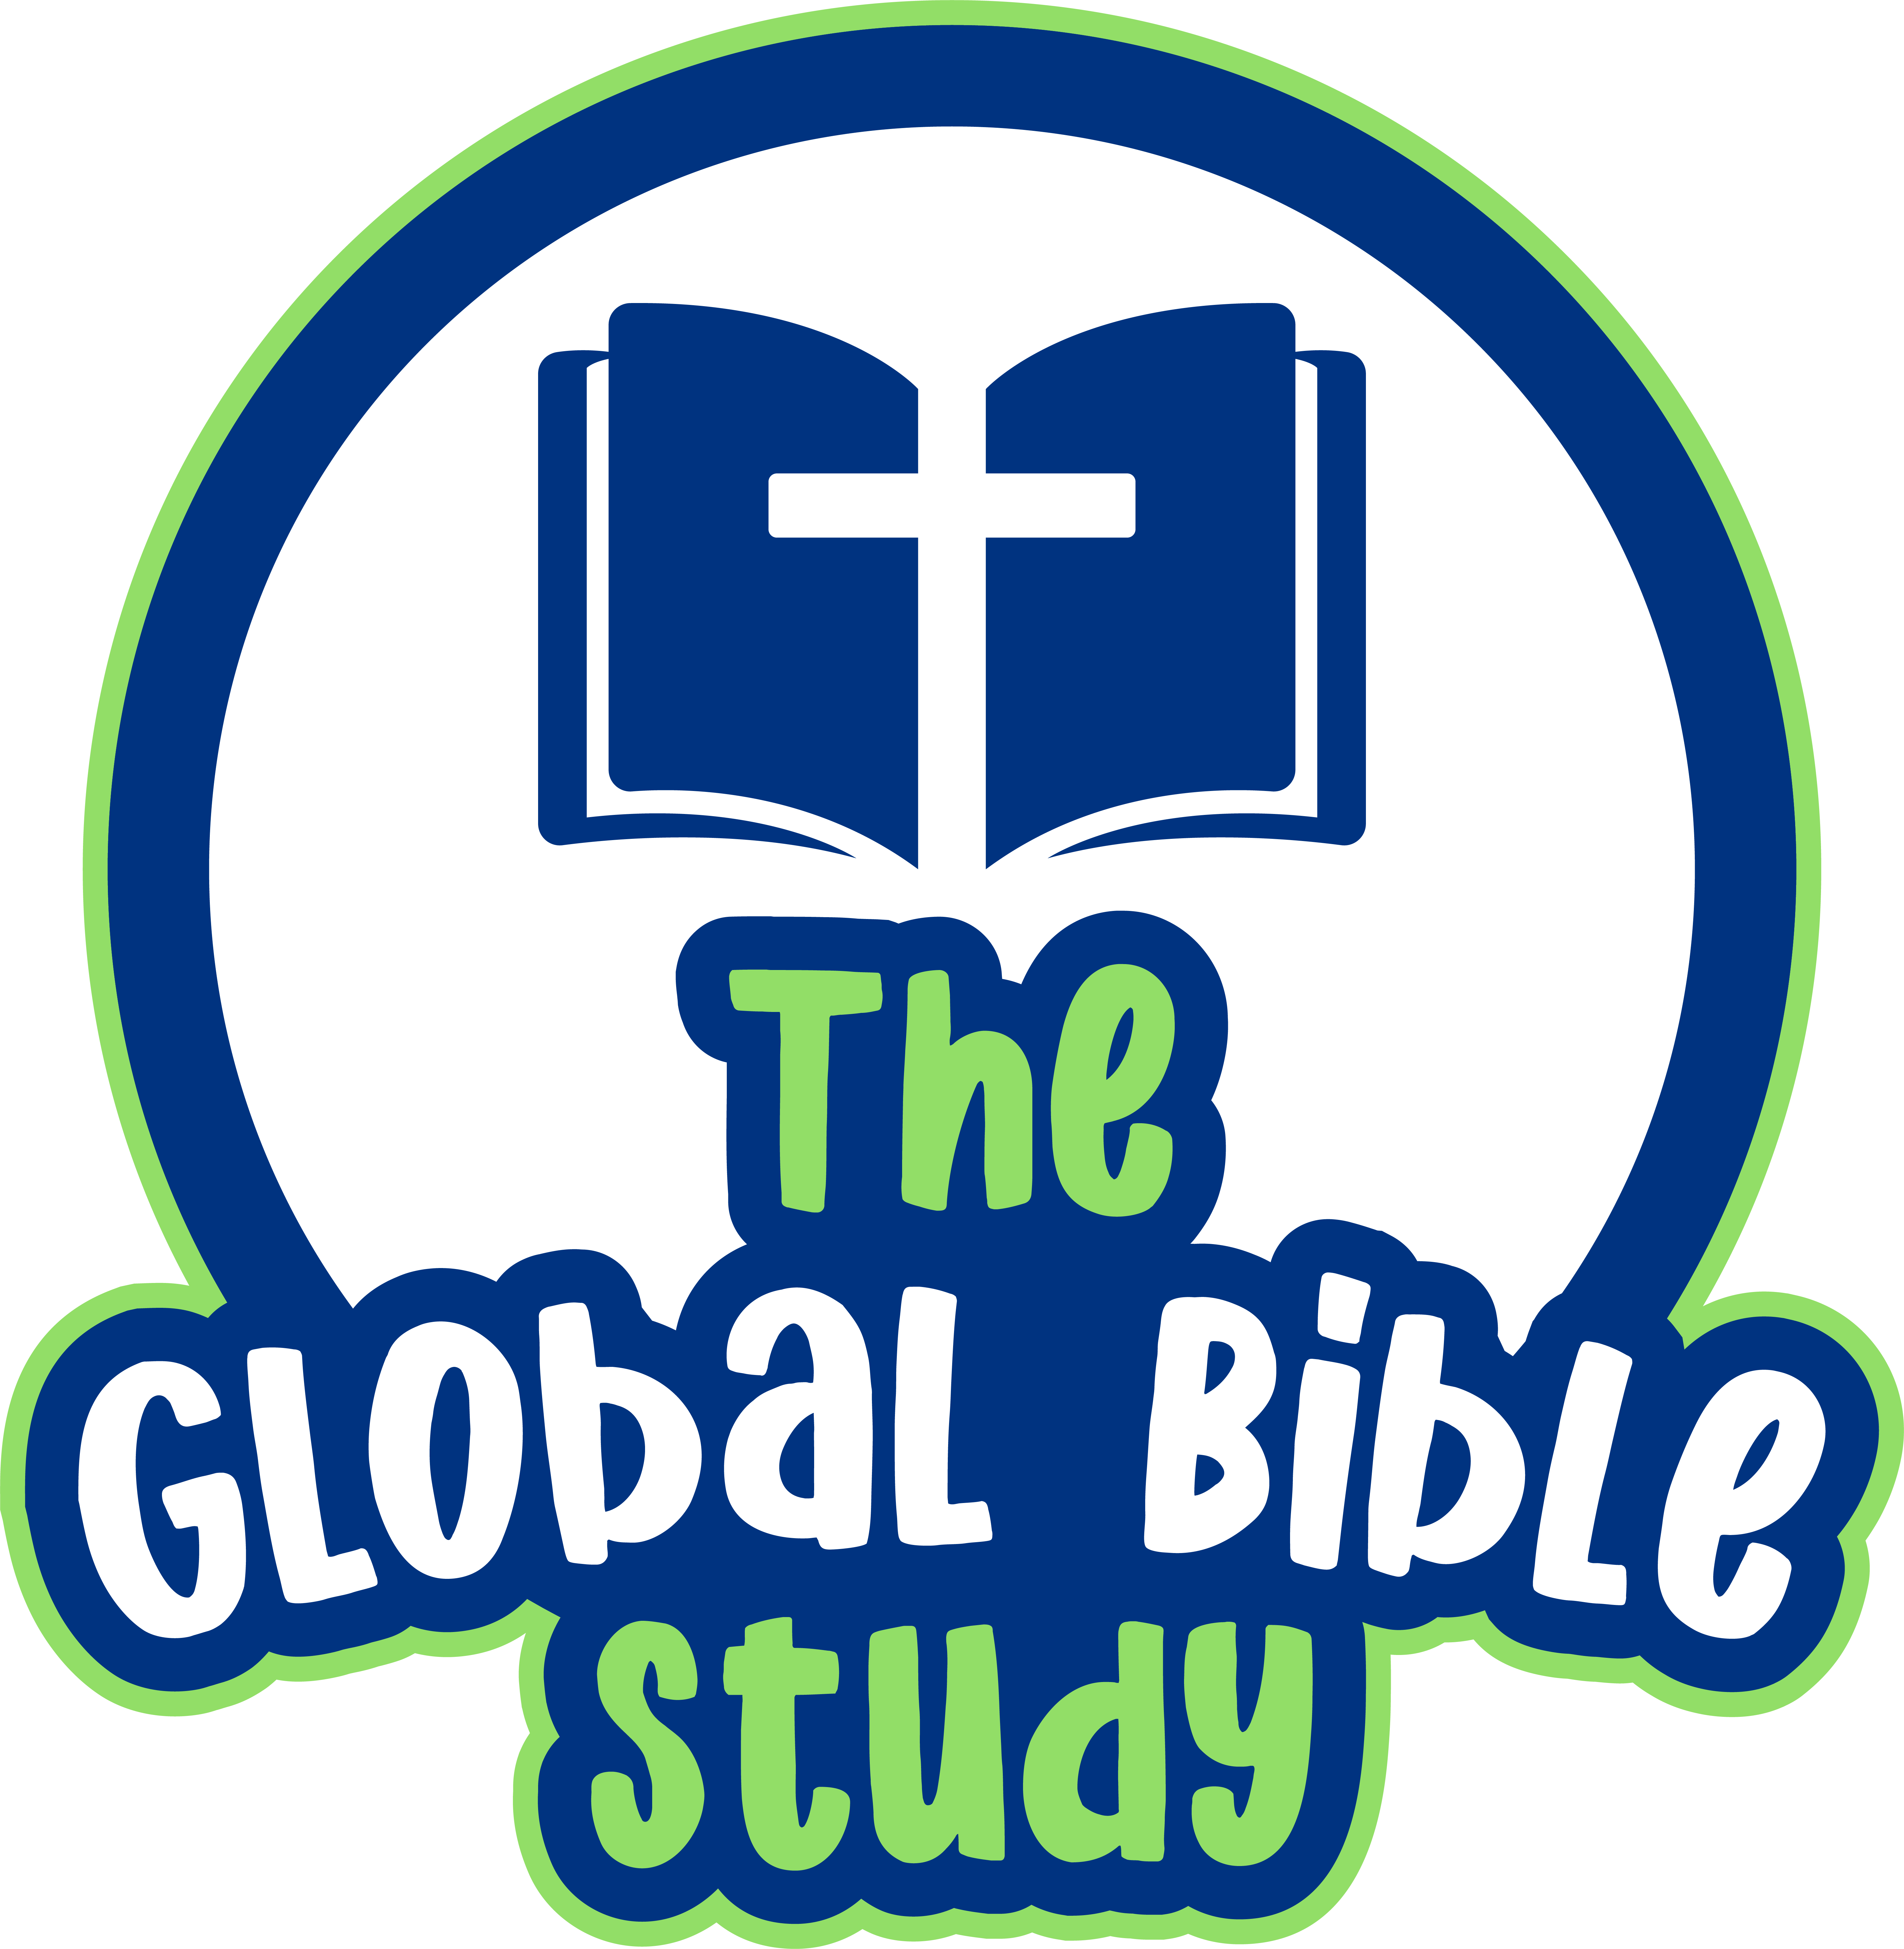 The Global Bible Study